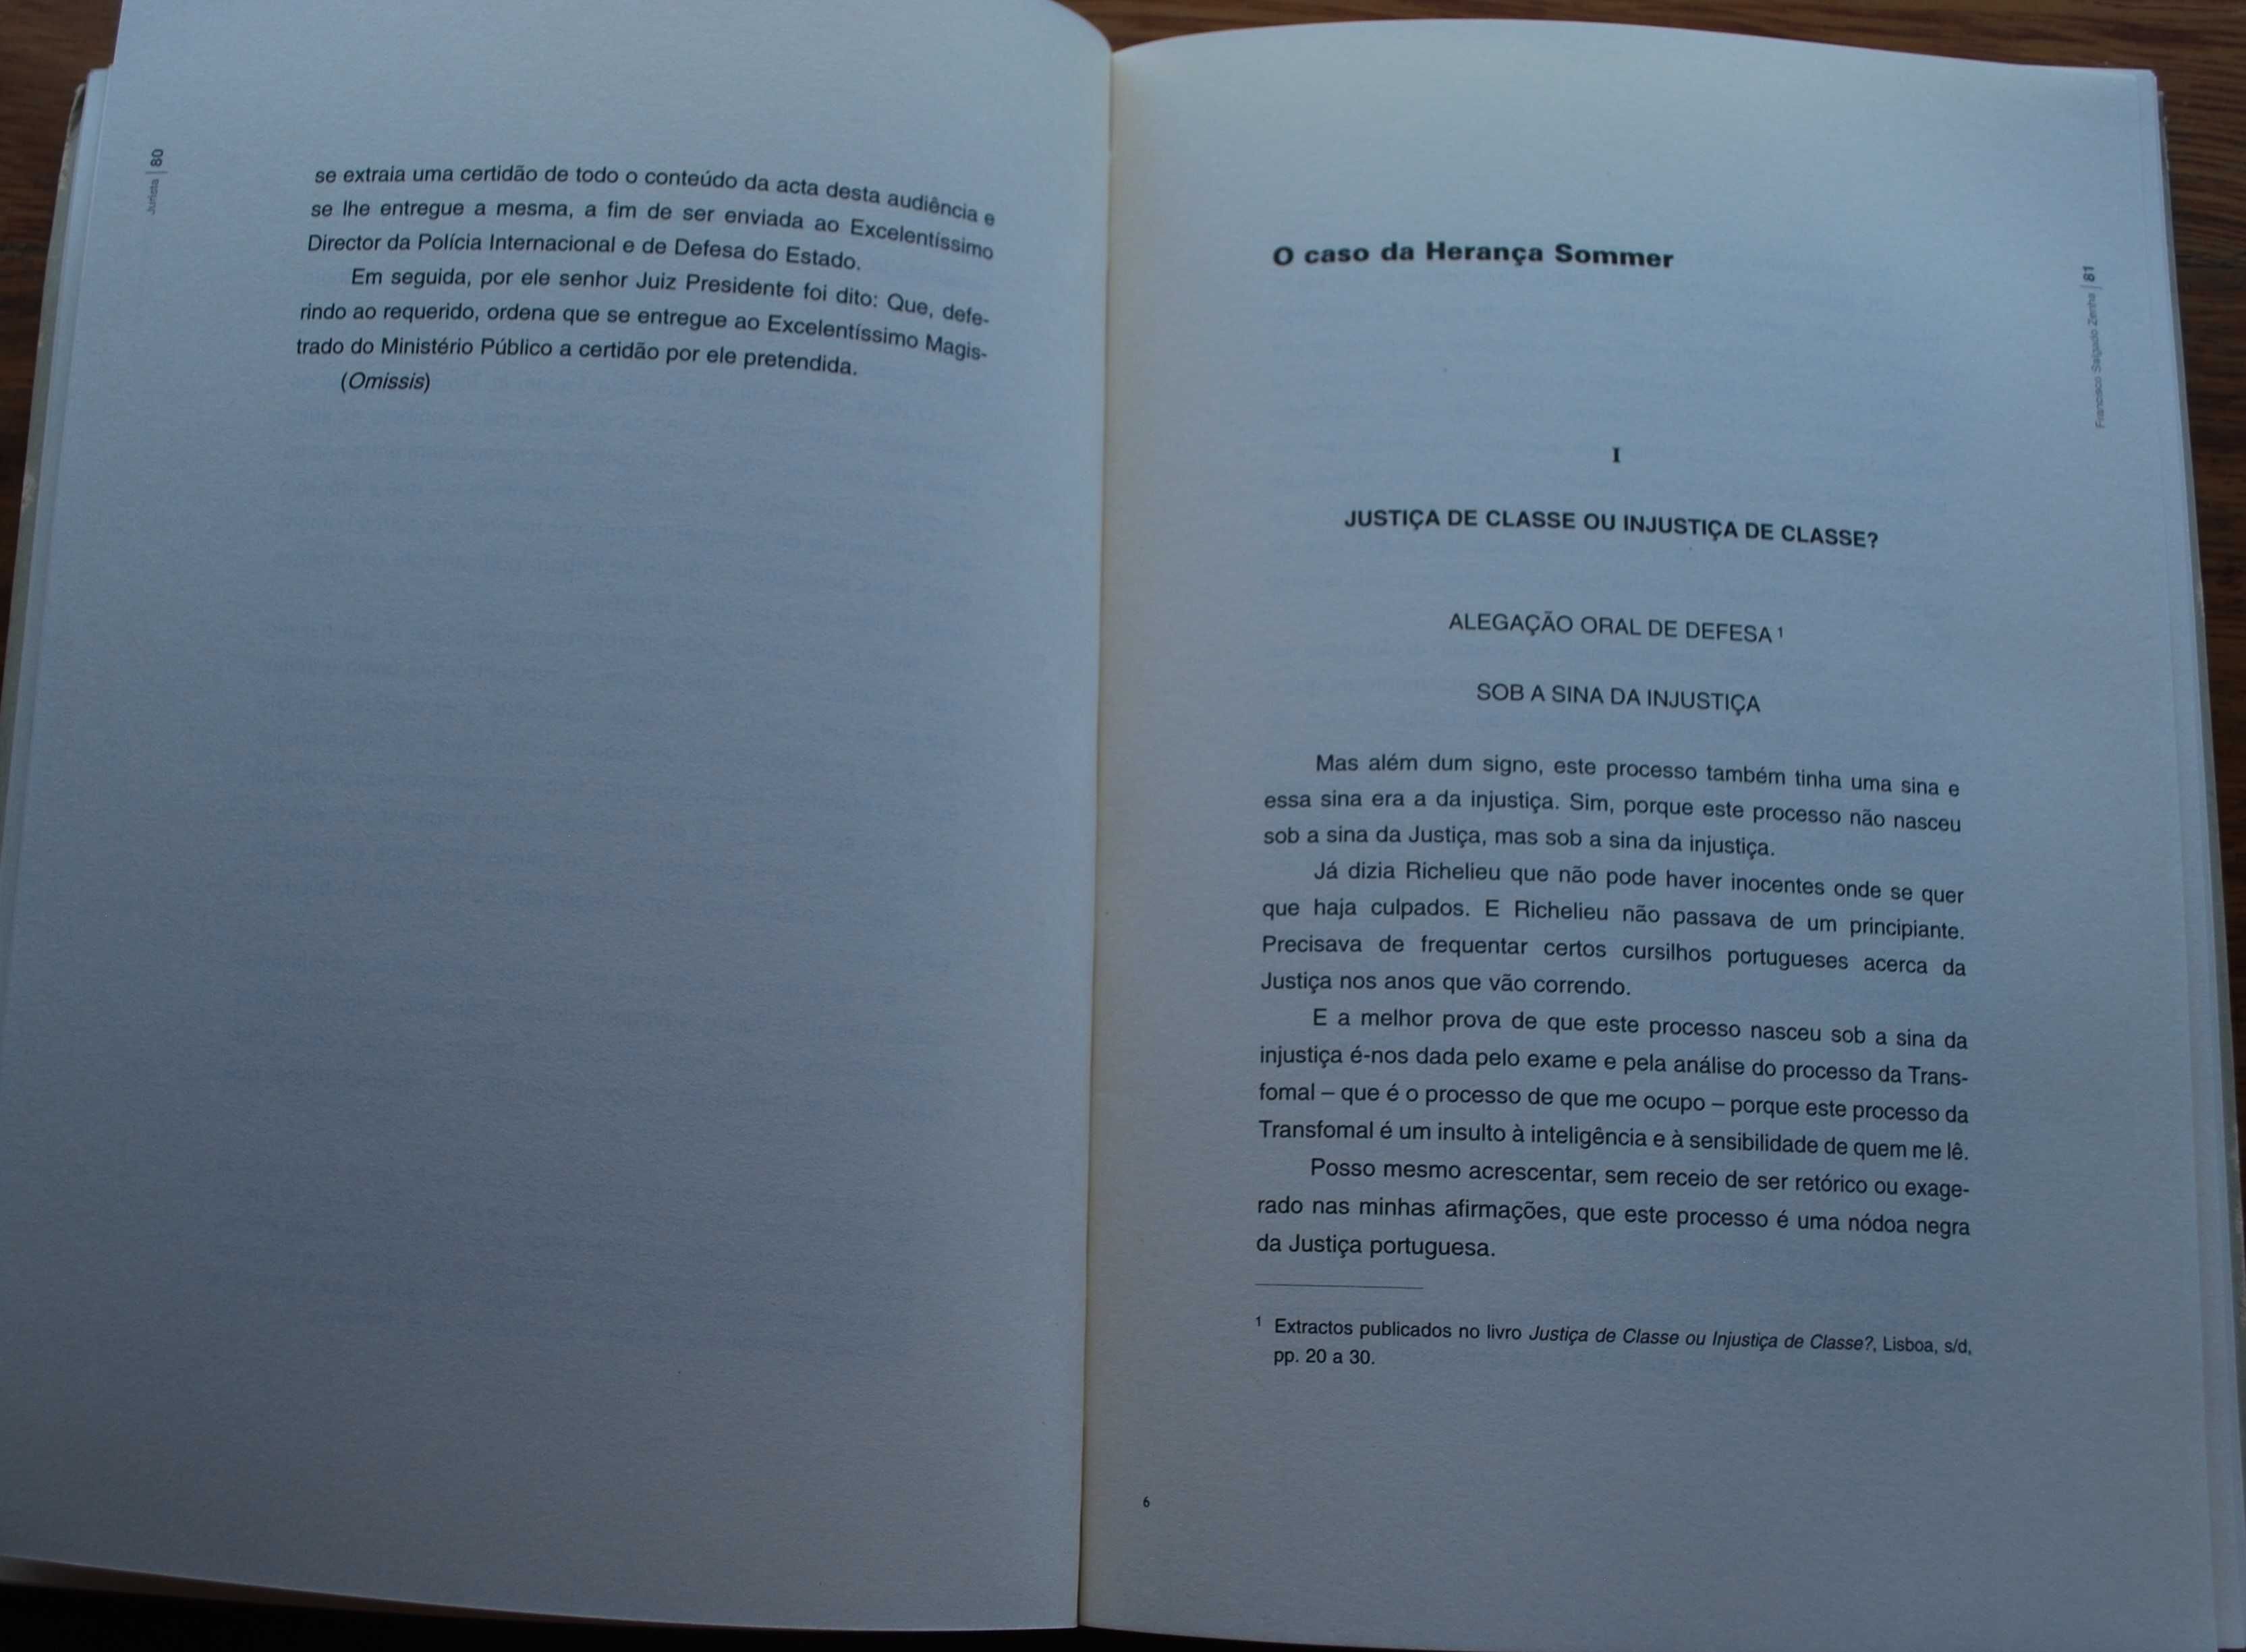 Francisco Salgado Zenha - Textos Escolhidos - Edição Única 1998